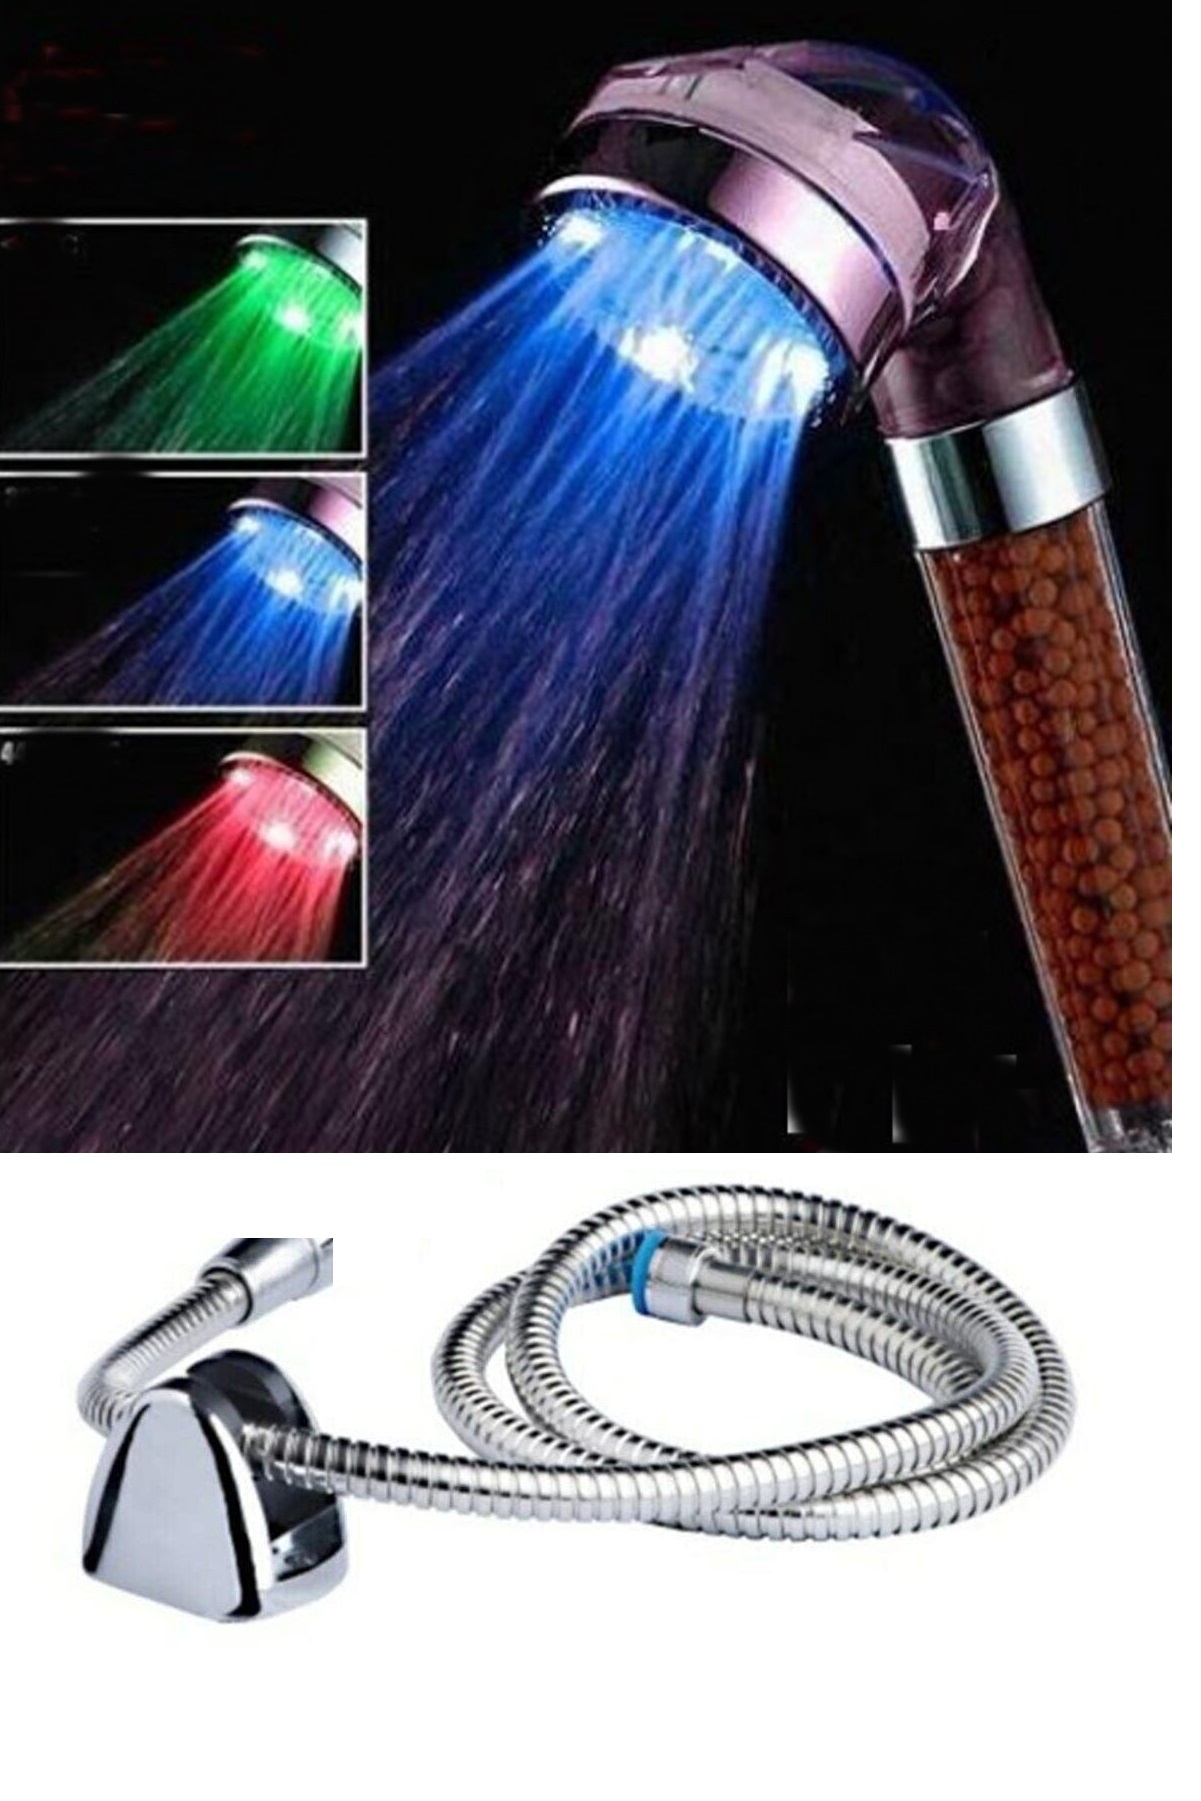 CLZ174 Renk Değiştiren Led Işıklı Duş Başlığı Seti- Hortum Askı Seti (Pilsiz- Elektriksiz)